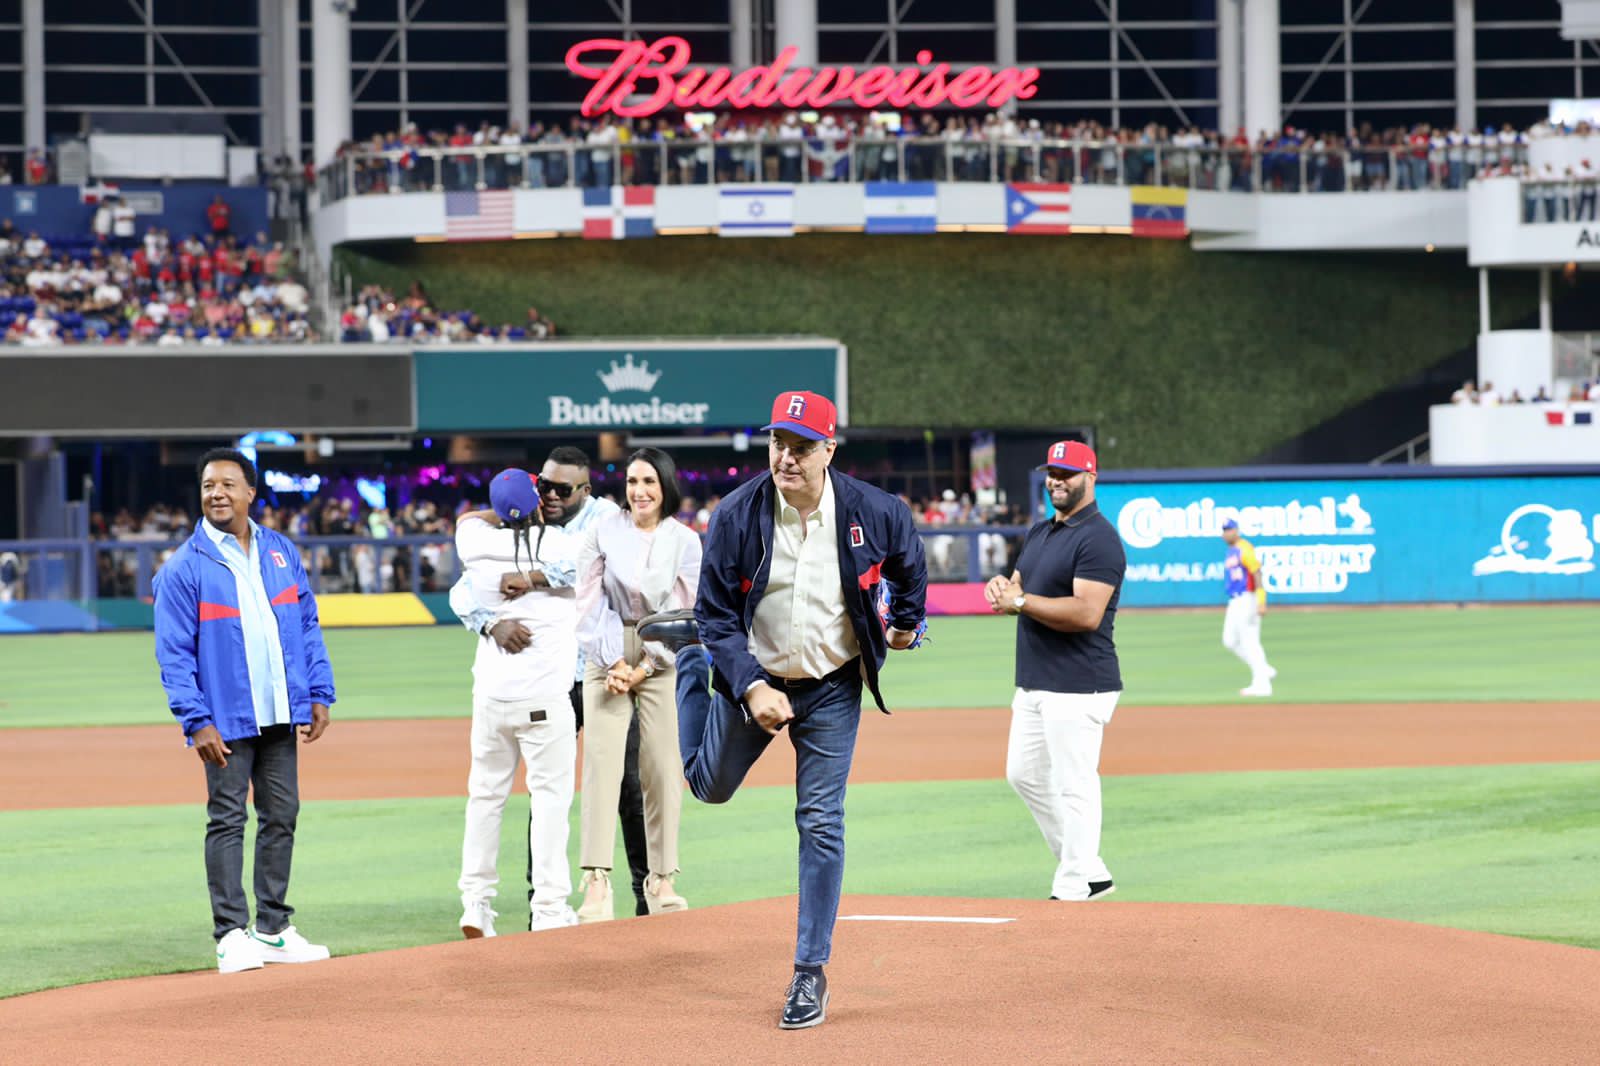 REPÚBLICA DOMINICANA: Presidente Abinader hace historia al convertirse en el primer jefe de Estado en lanzar la primera bola en Clásico Mundial de Béisbol